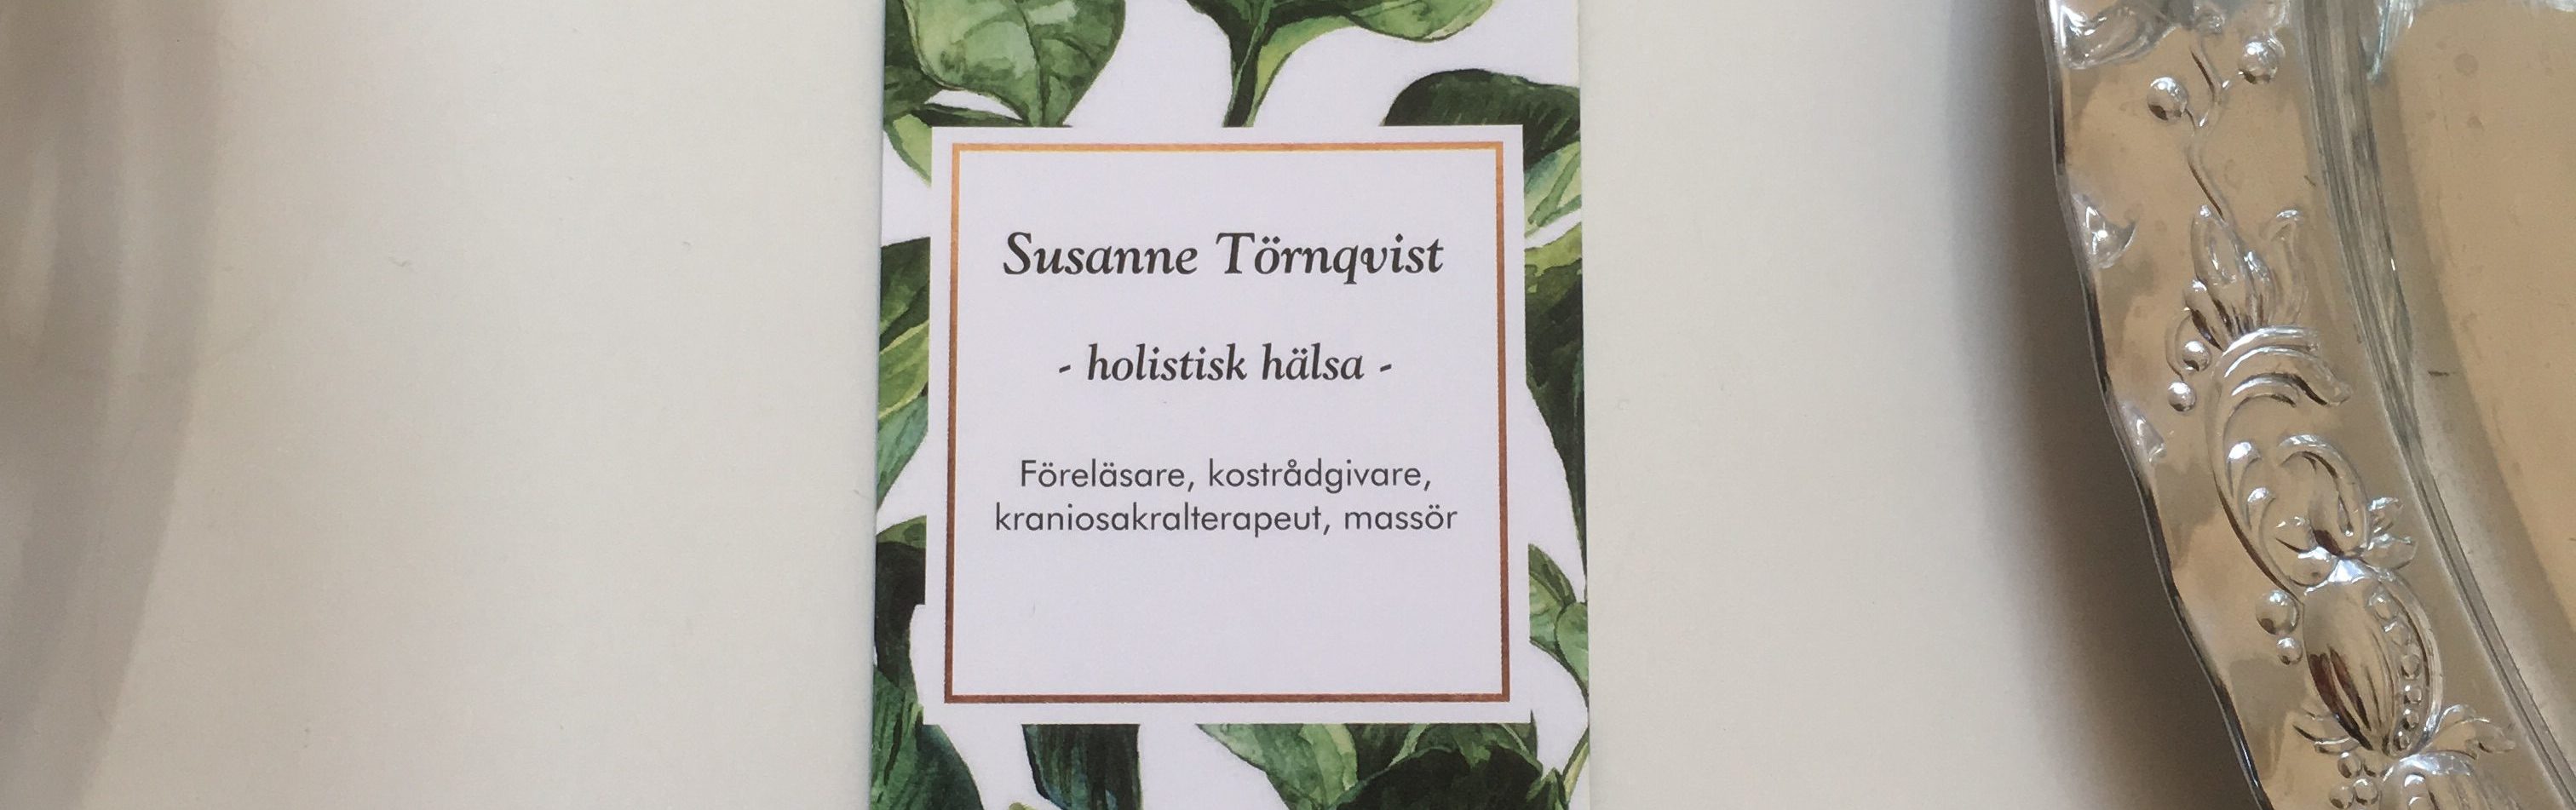 susannetornqvist.se